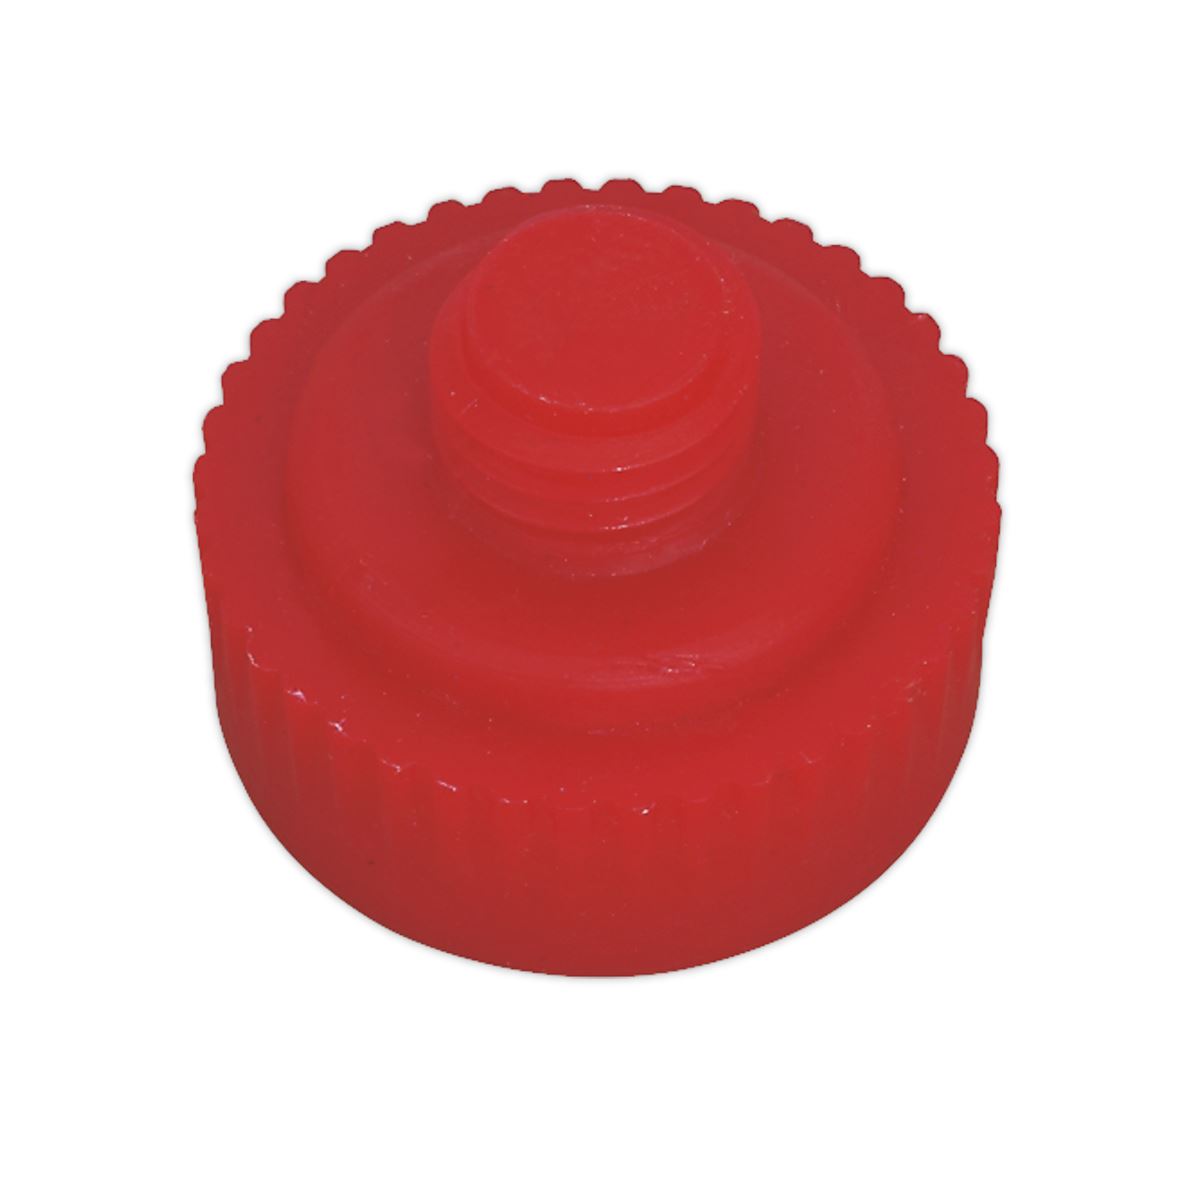 Sealey Premier Nylon Hammer Face, Medium/Red for DBHN275